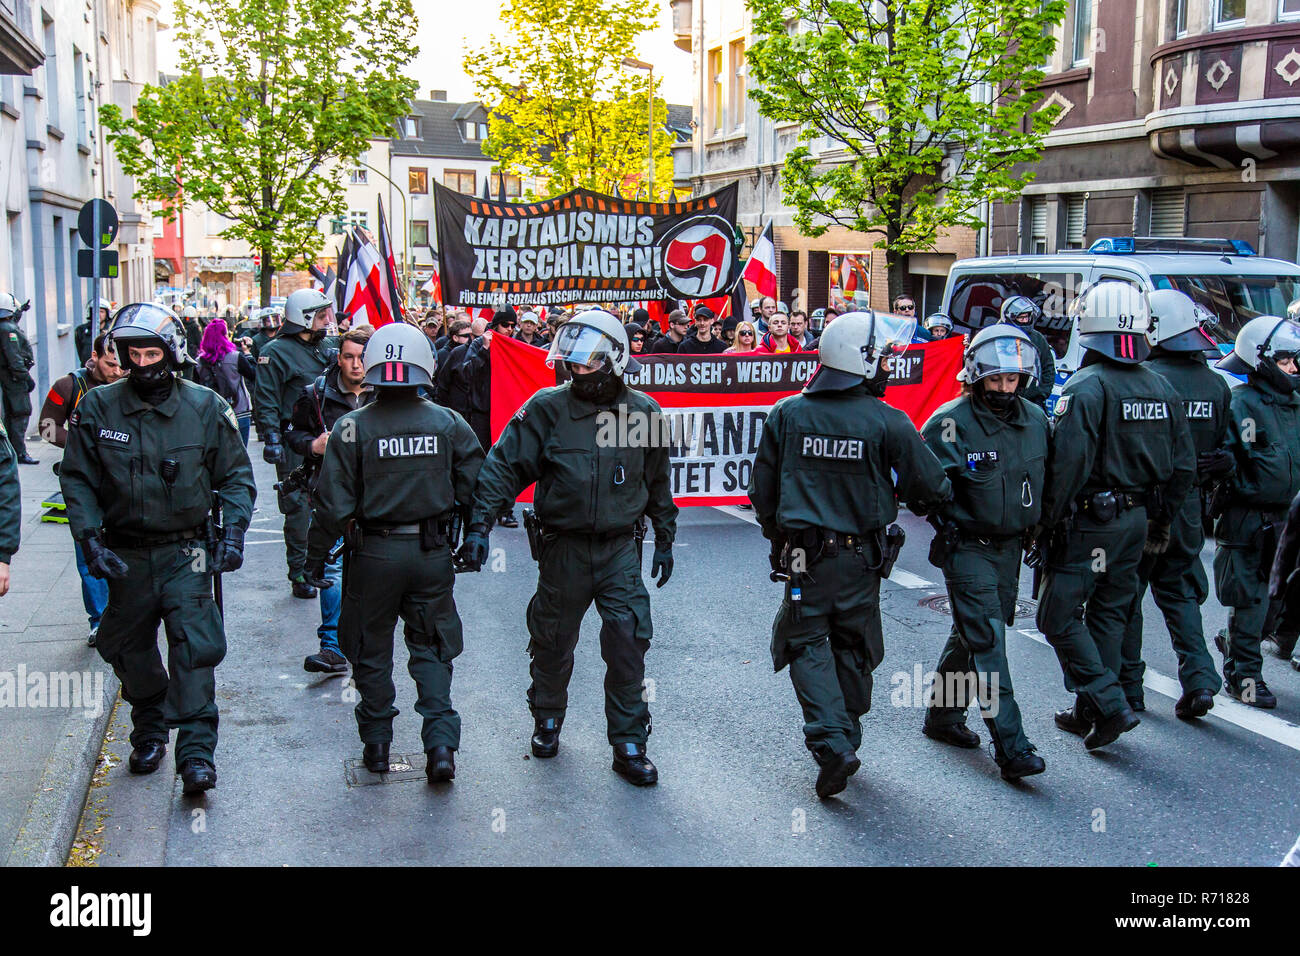 Polizei bei einem Protest, rechtsextreme Partei Marching in Essen am 1. Mai 2015, Deutsches Reich Flagge, Essen, Nordrhein-Westfalen Stockfoto